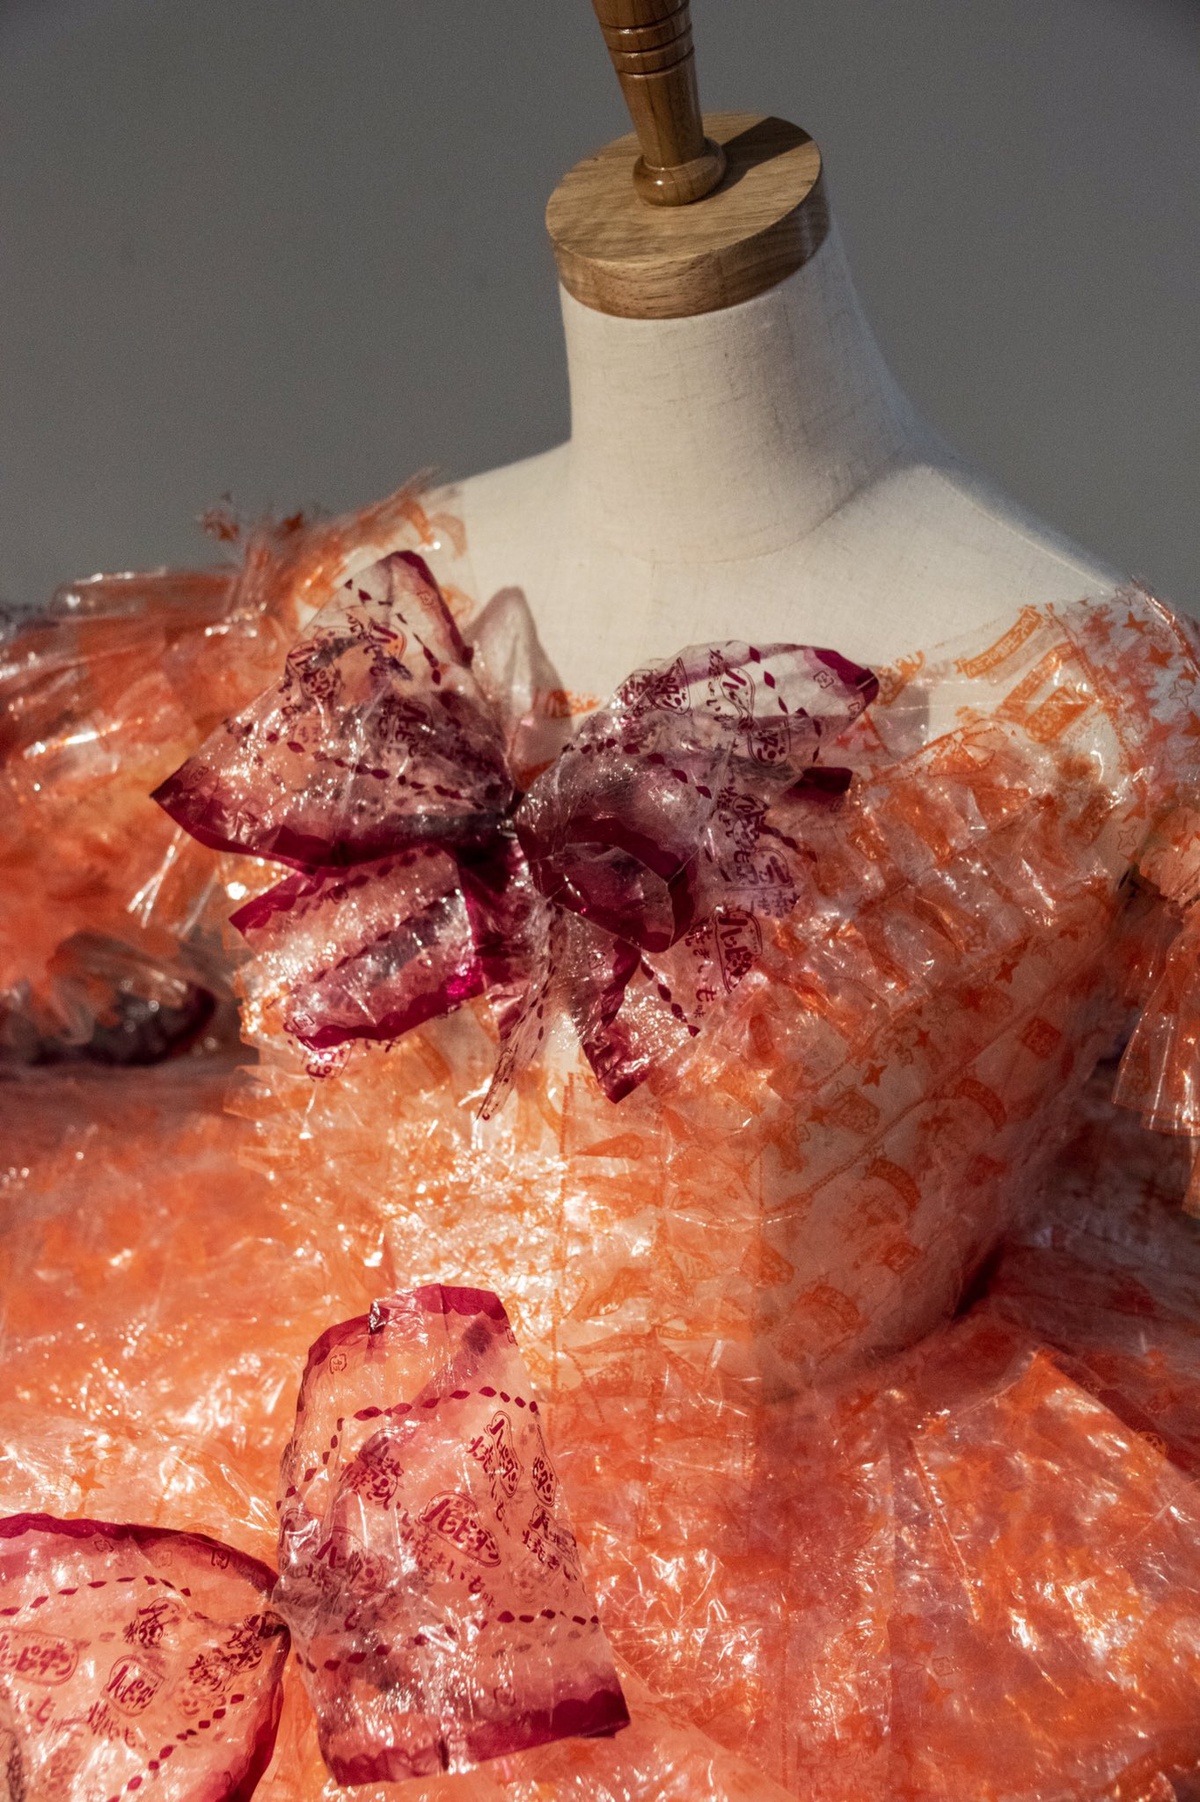 Dù là chất liệu tái chế, các chi tiết trên váy đều được chăm chút tỉ mỉ sao cho giống thật nhất.